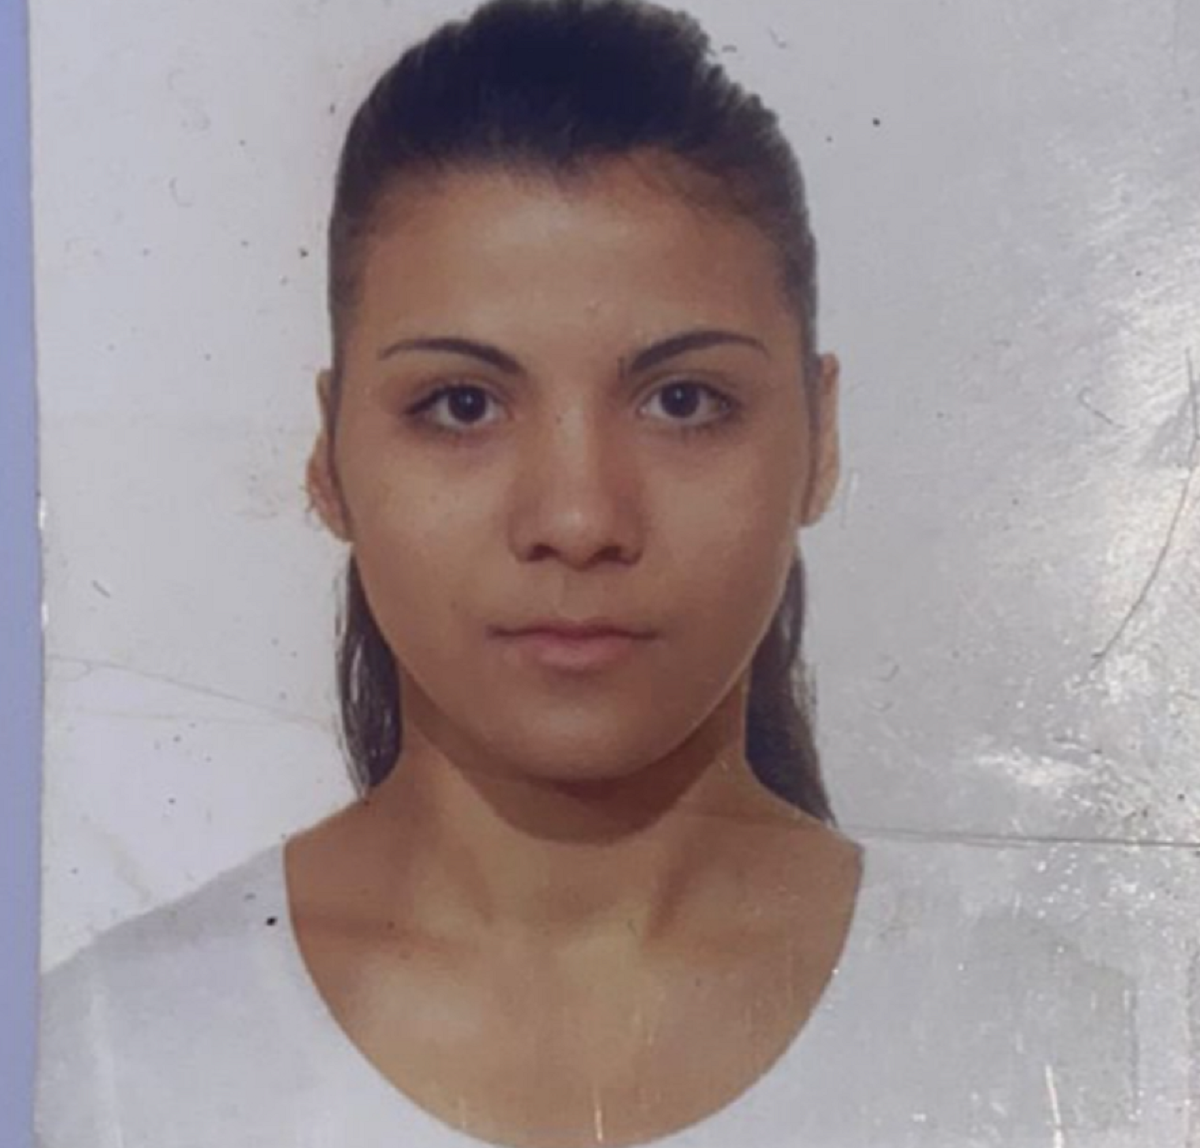 Alertă în Prahova! Negoiță Mihaela Izabela a plecat de acasă și nu a mai revenit. Tânăra de 25 de ani este căutată de poliție și familie